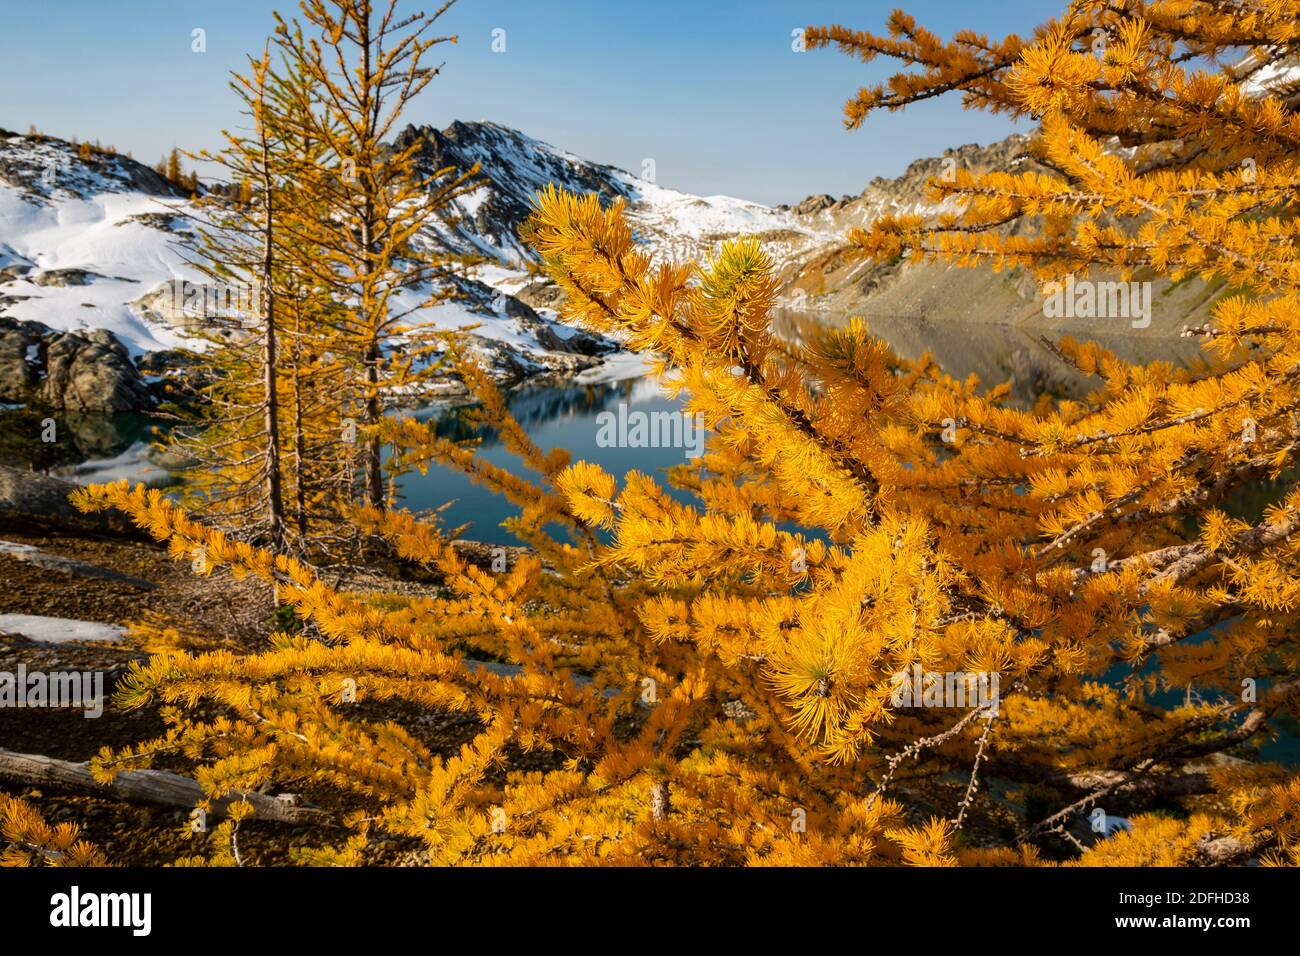 WA18668-05...WASHINGTON - temps d'automne à Upper Ice Lake, dans la région sauvage de Glacier Peak, dans la forêt nationale de Wenatchee. Banque D'Images